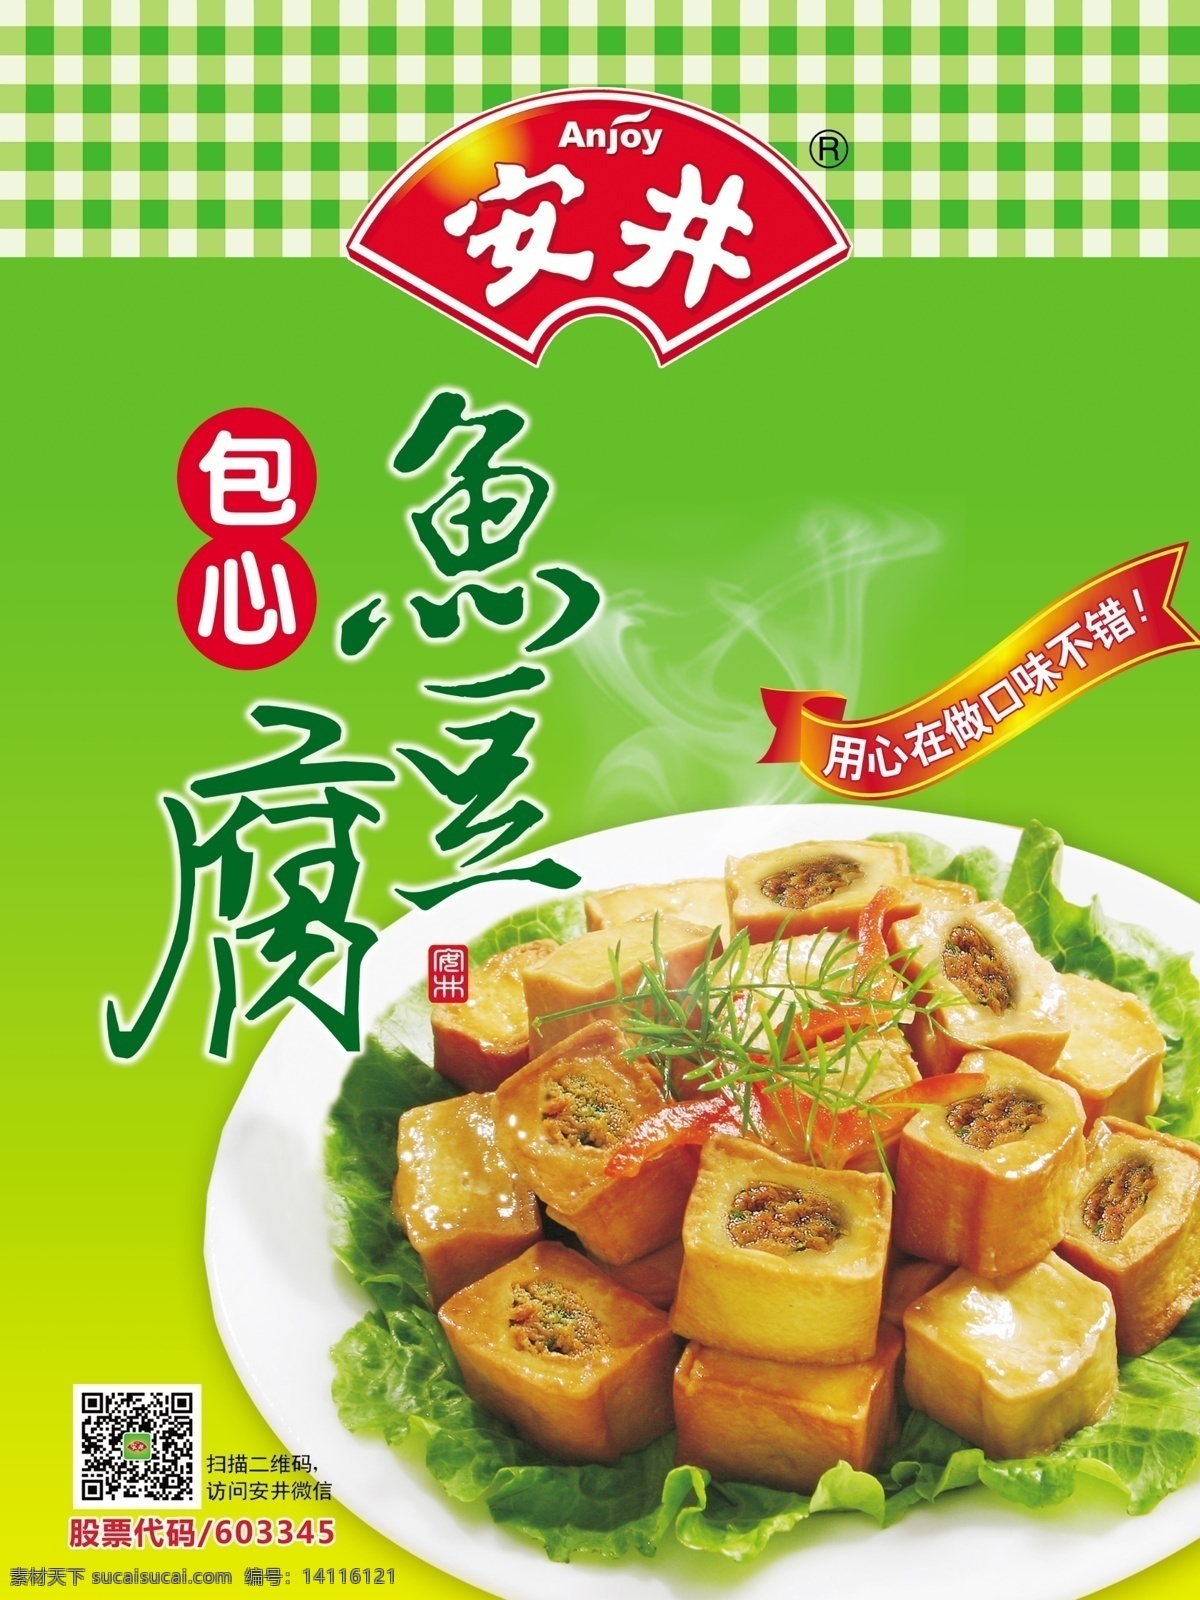 安井 包心 鱼 豆腐 包心鱼豆腐 鱼豆腐 冻品 速食 素食 面食 饮食 食物